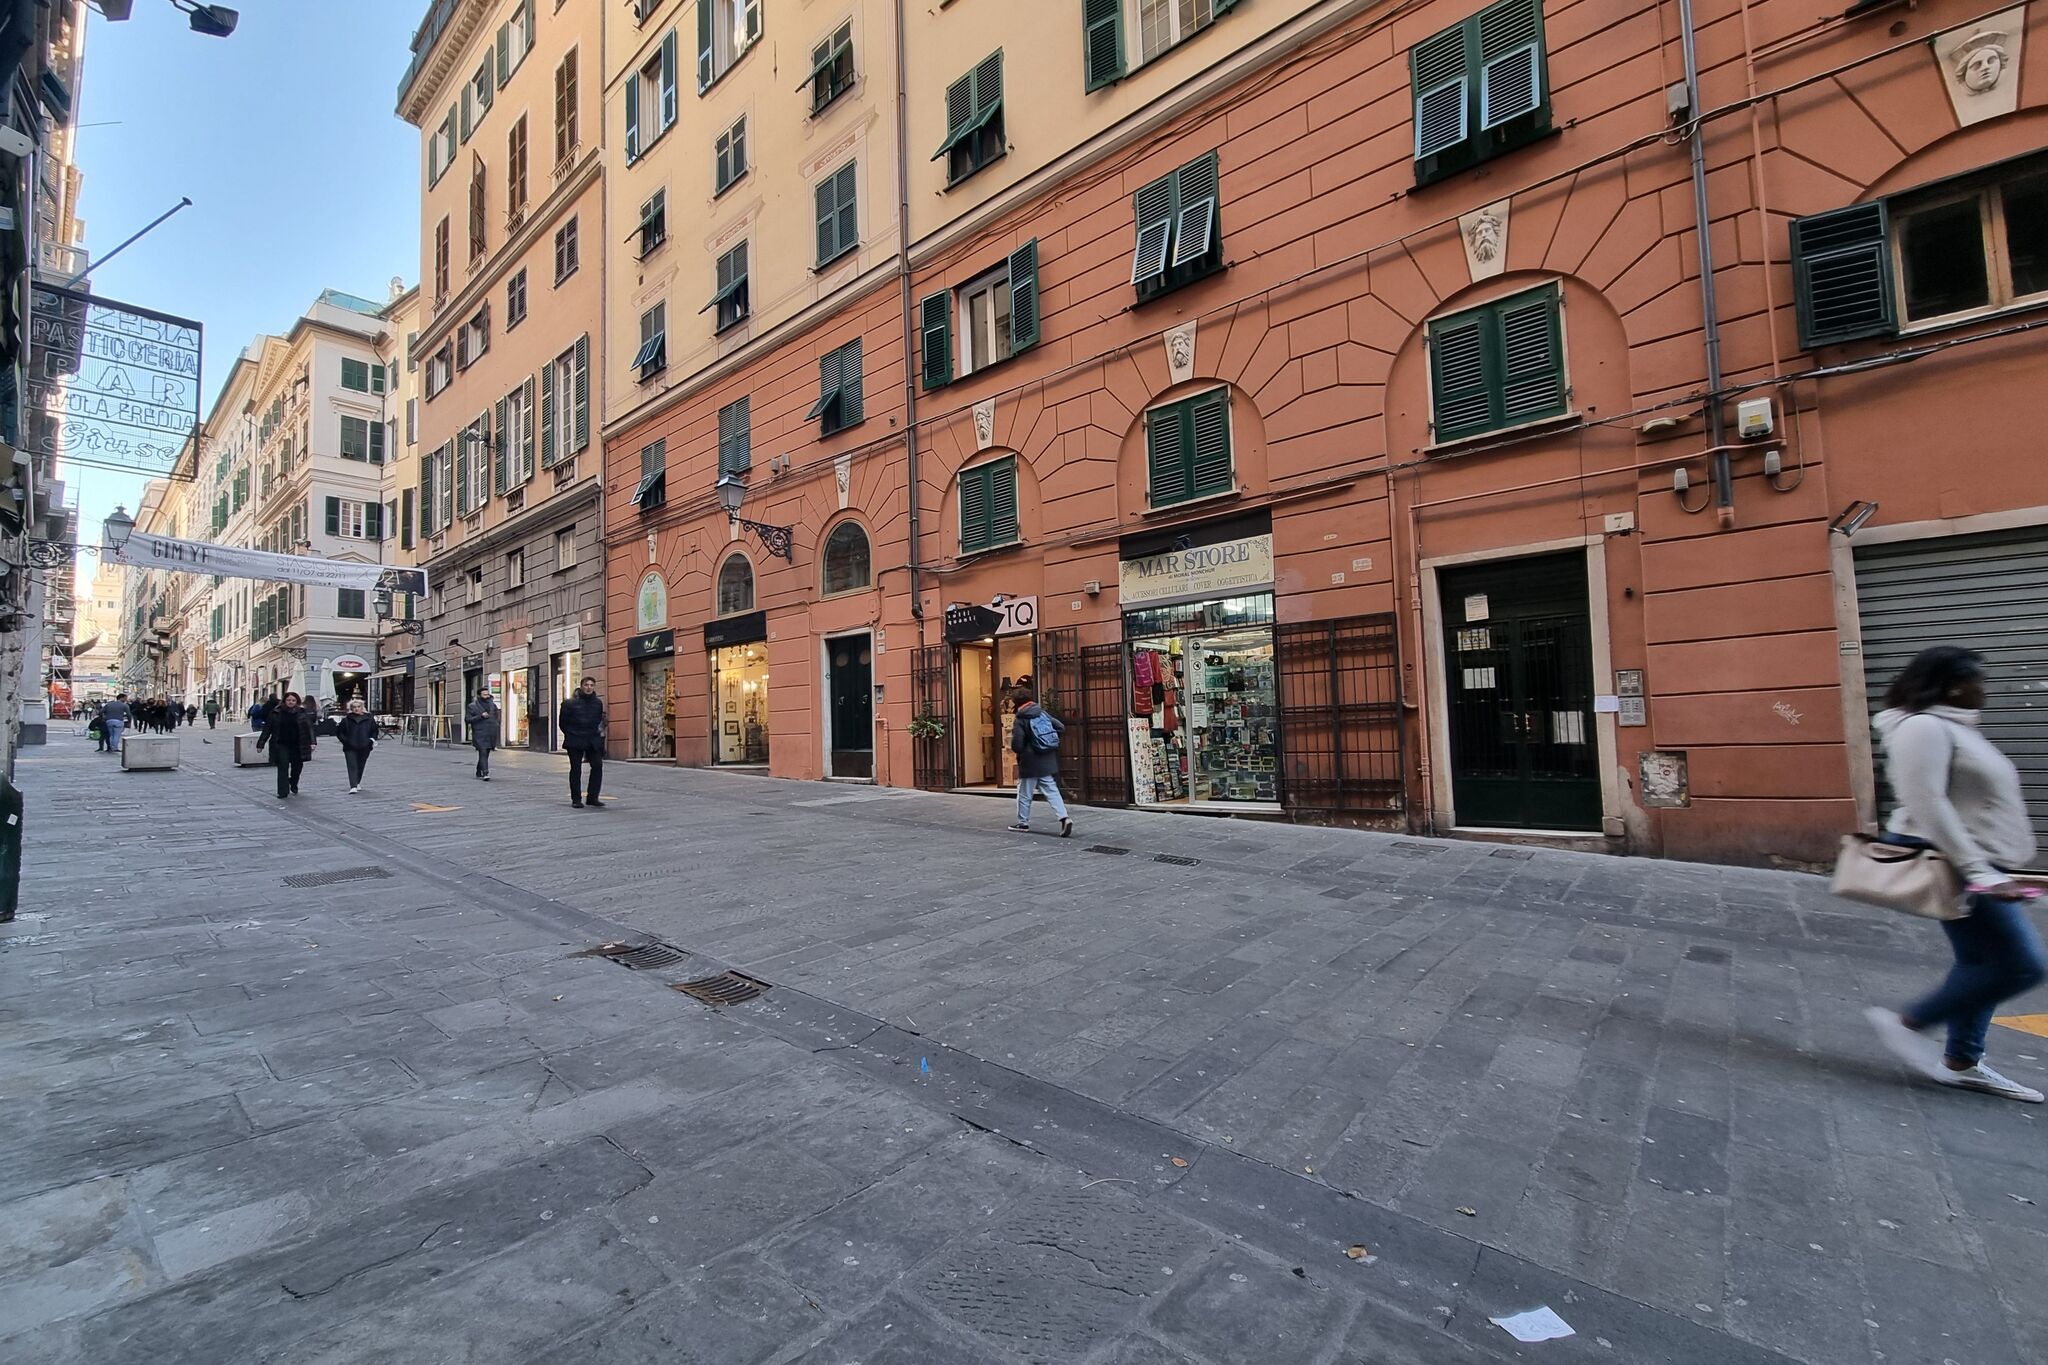 Appartement confortable à Gênes dans le centre historique